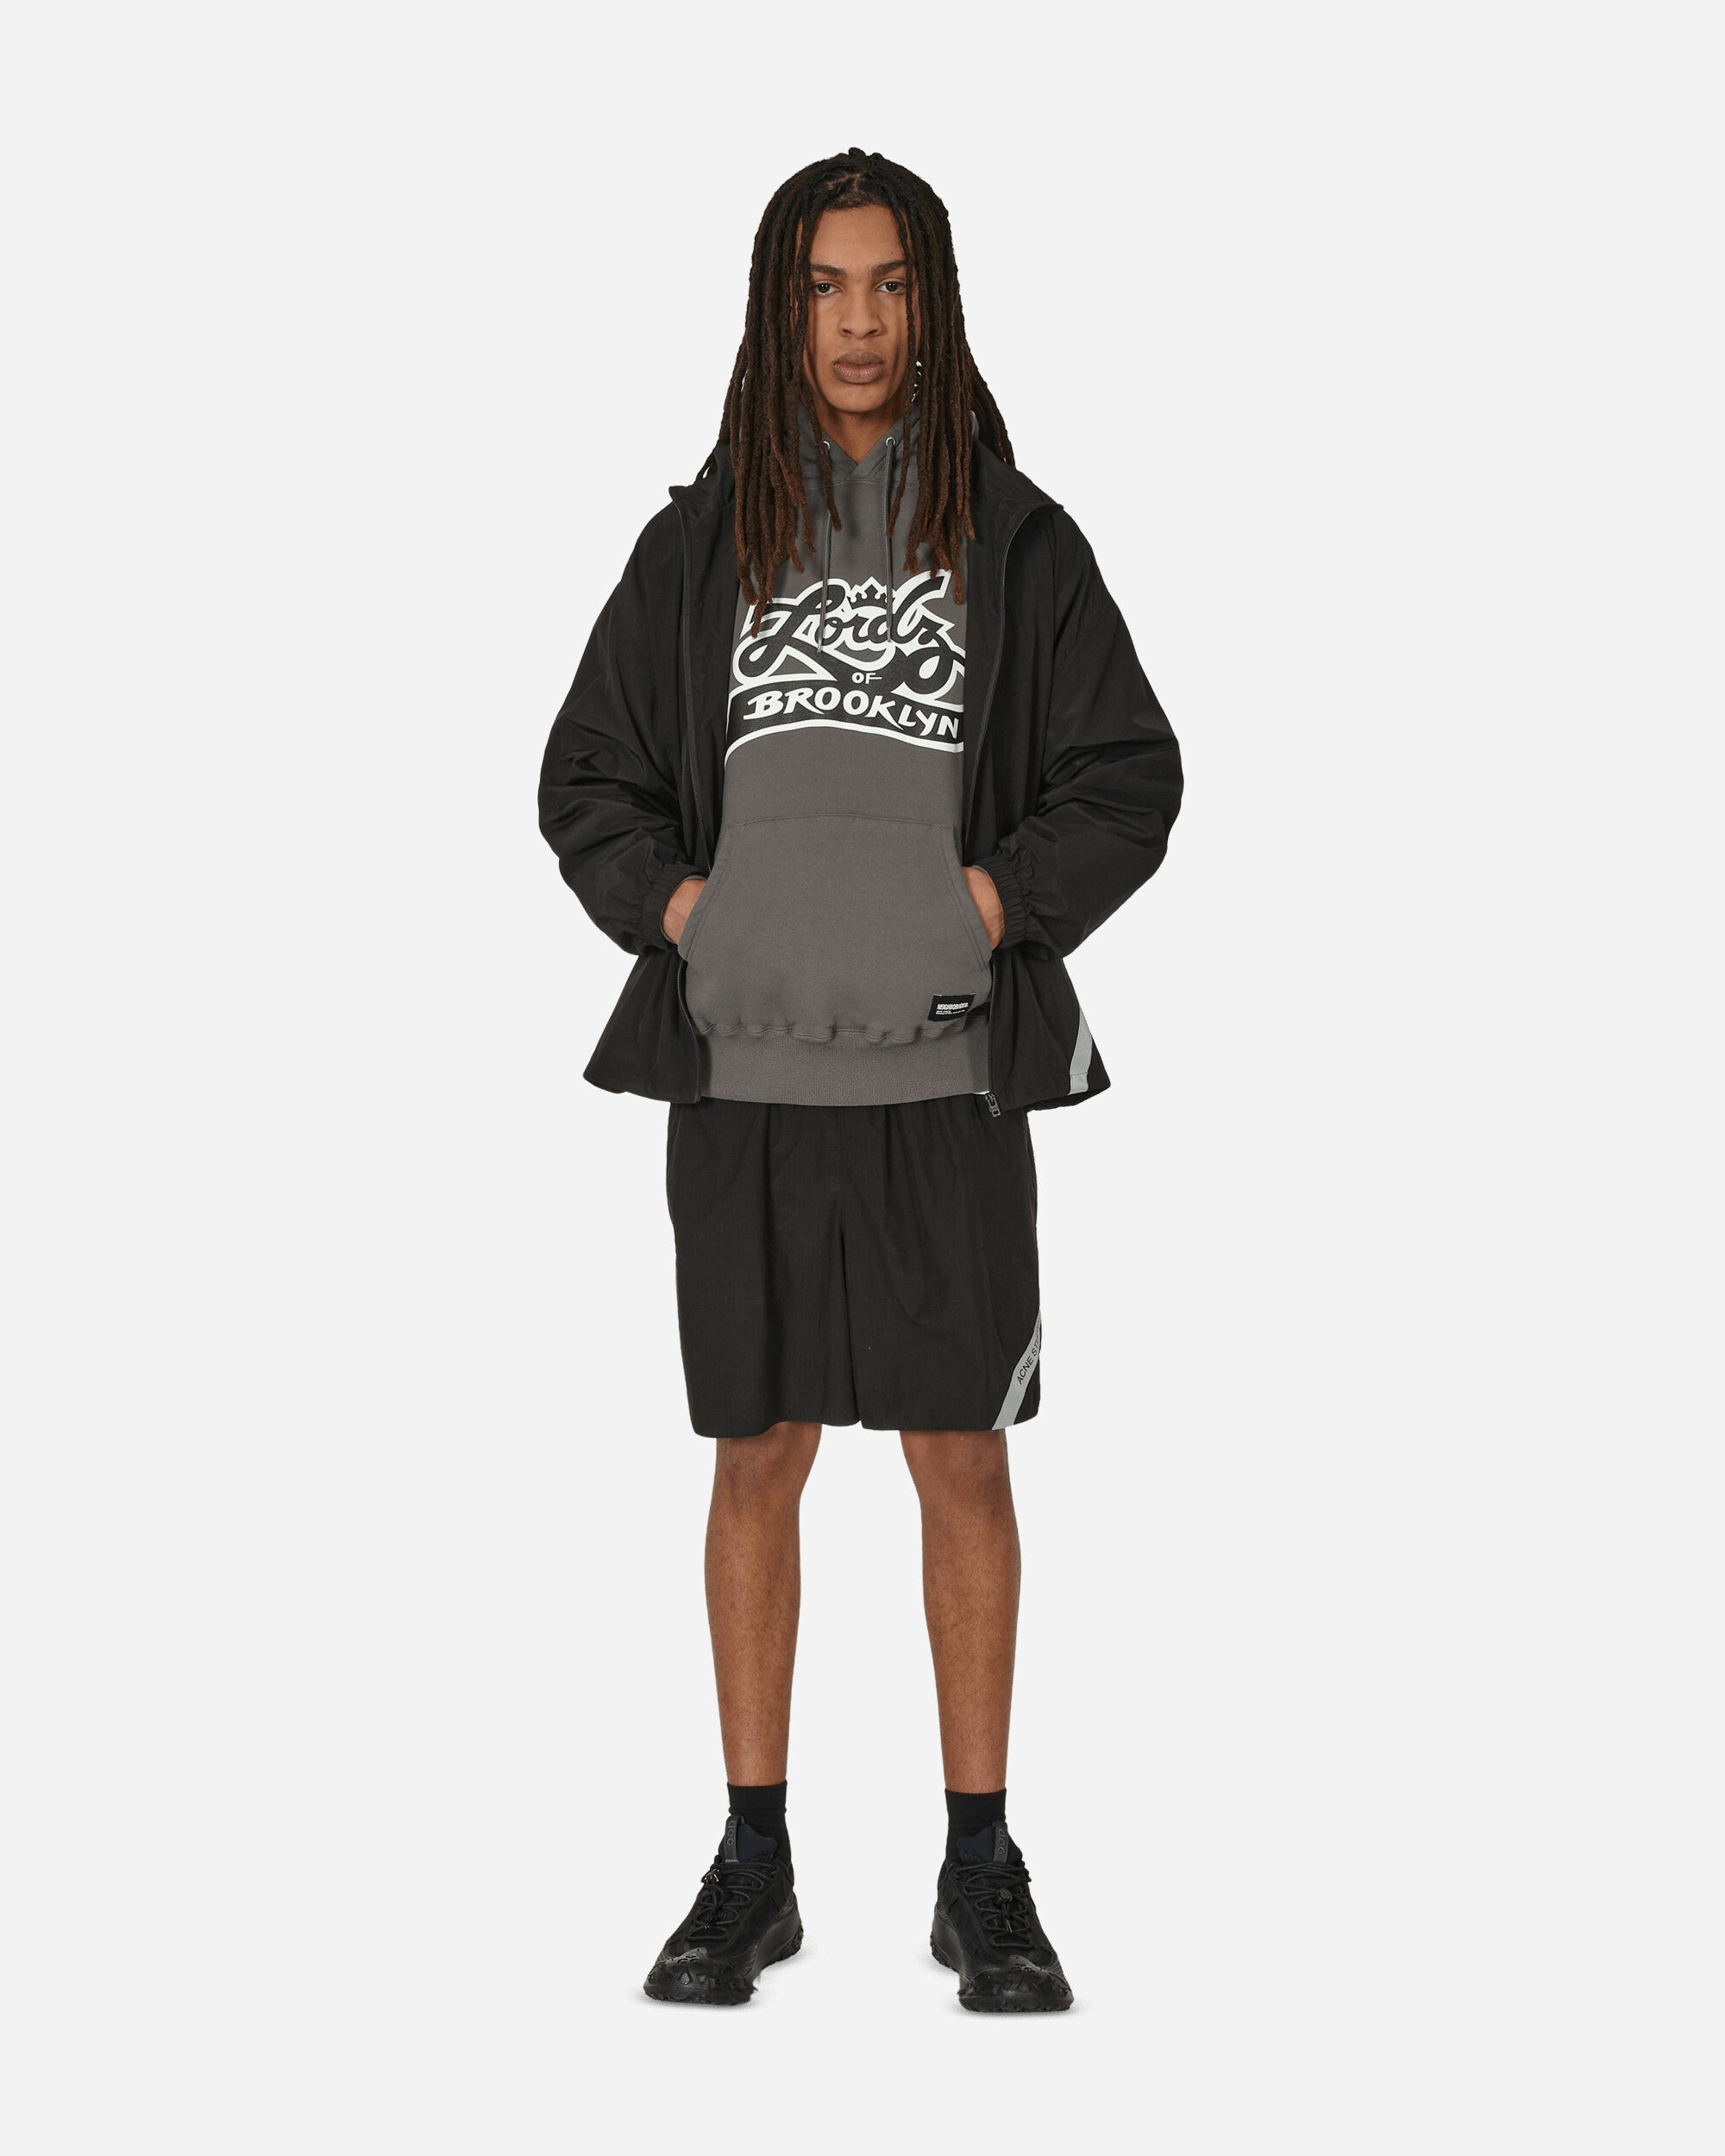 Lordz Of Brooklyn Hooded Sweatshirt Charcoal - 4